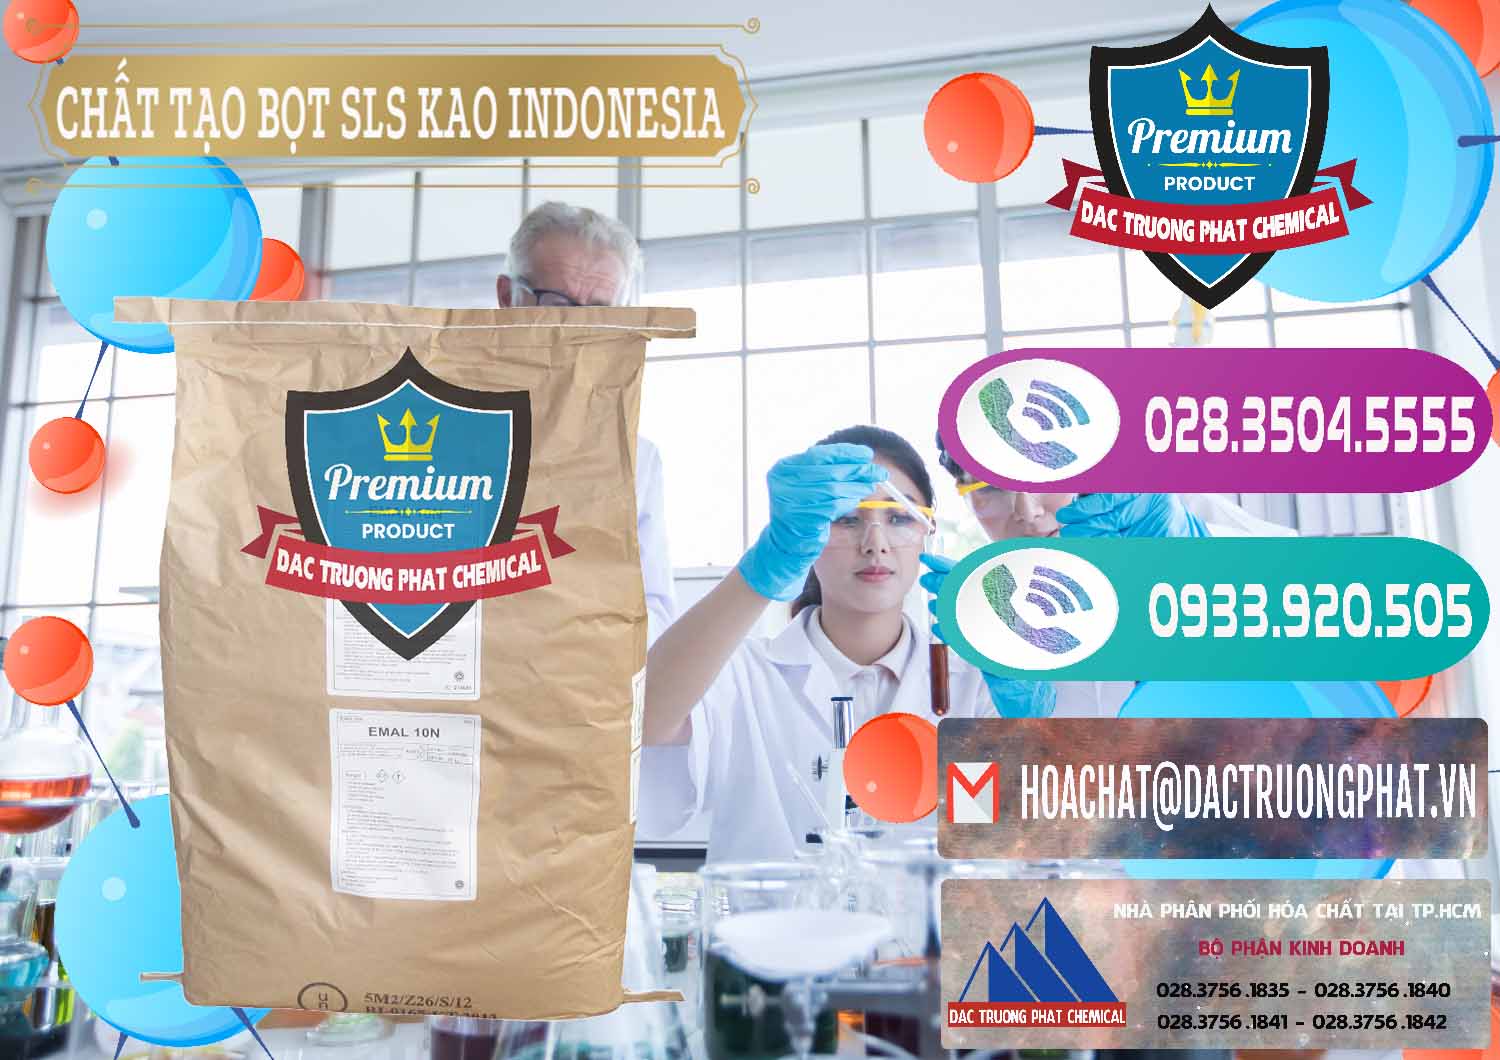 Cty chuyên bán và cung ứng Chất Tạo Bọt SLS - Sodium Lauryl Sulfate EMAL 10N KAO Indonesia - 0047 - Cty chuyên phân phối & bán hóa chất tại TP.HCM - hoachatxulynuoc.com